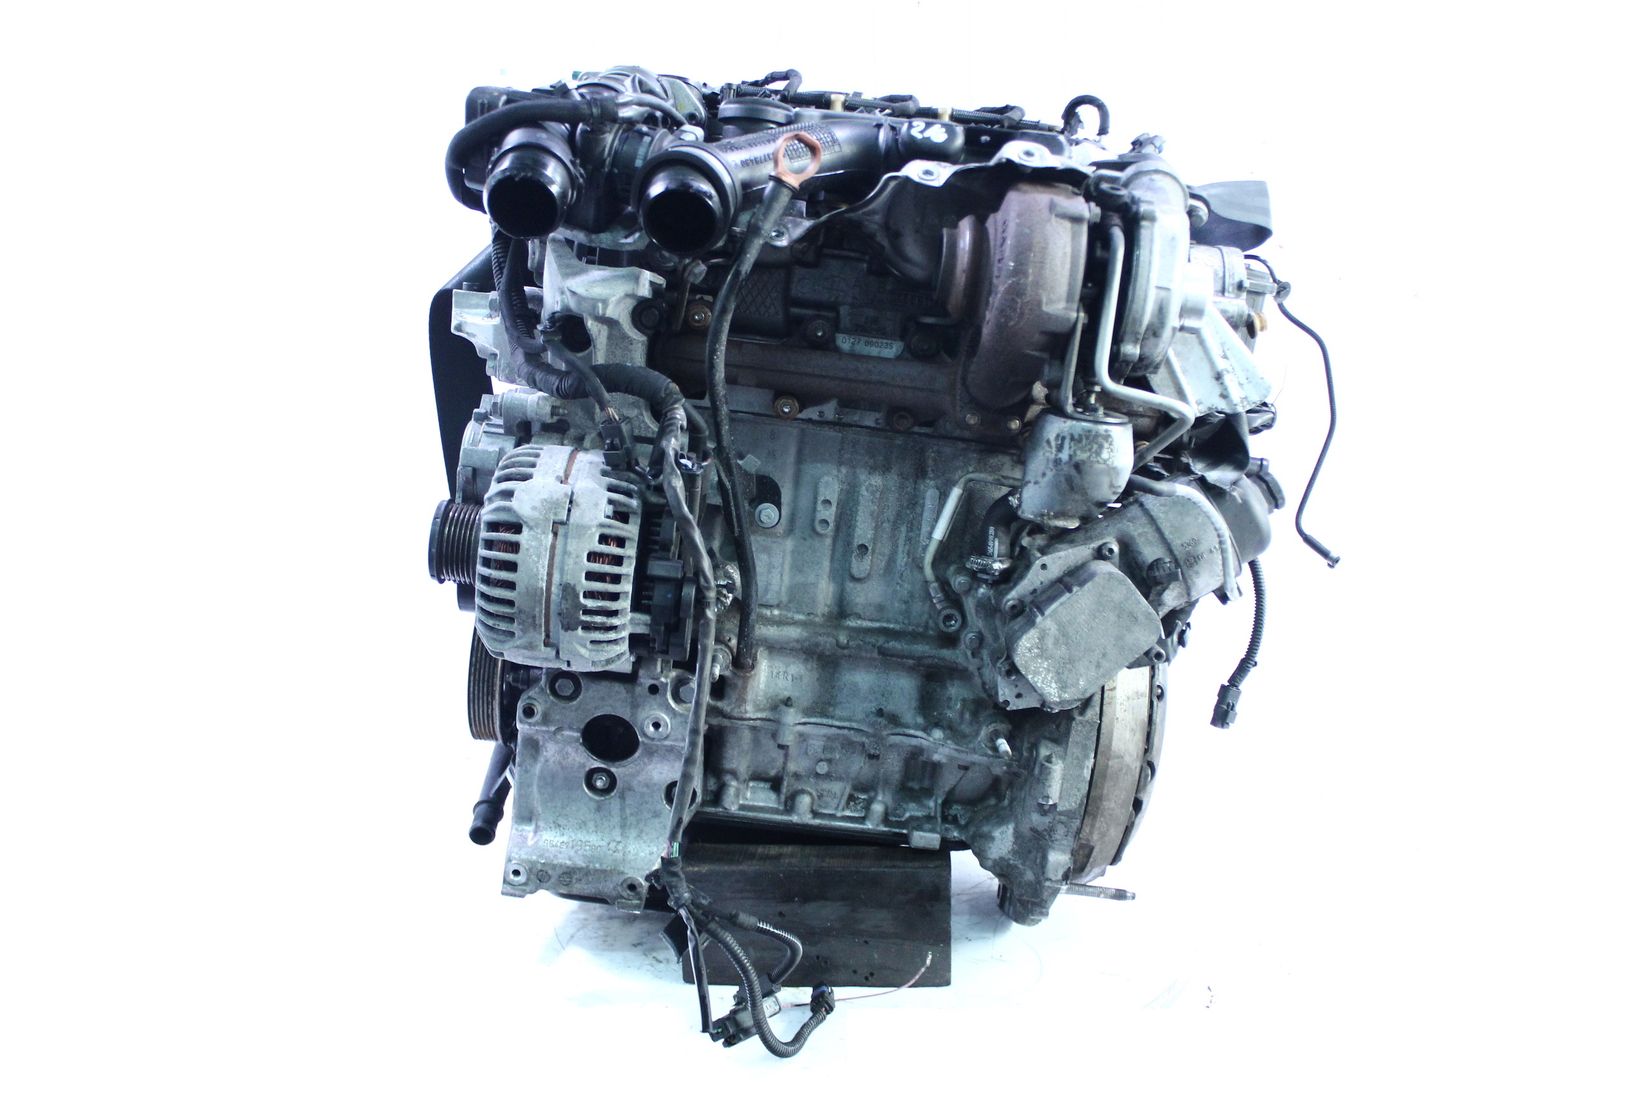 Motor 2008 Peugeot 308 1,6 HDi Diesel 9HZ DV6TED4 9H01 PSA mit Anbauteilen Verwendet für anderer Bestellung